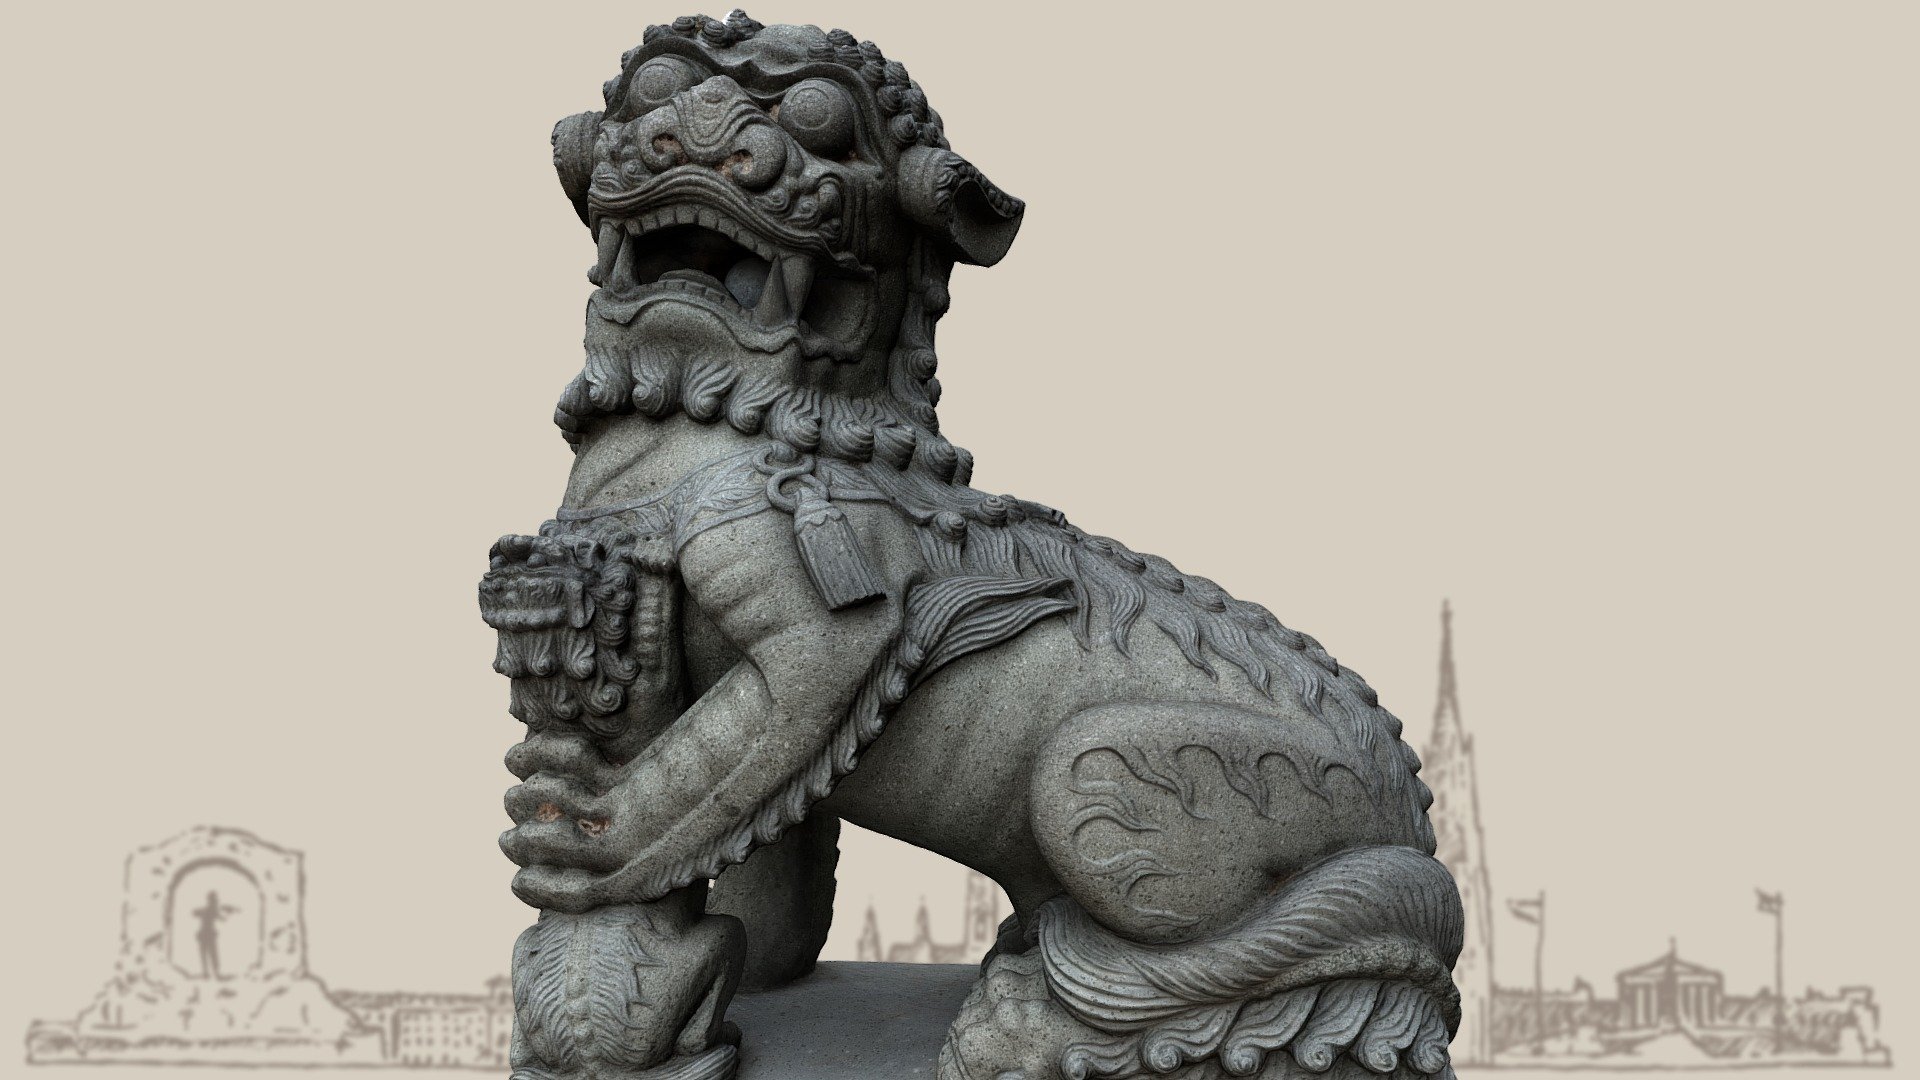 Lion as a companion animal of the goddess Guanyin in the &ldquo;Blumengärten Hirschtetten